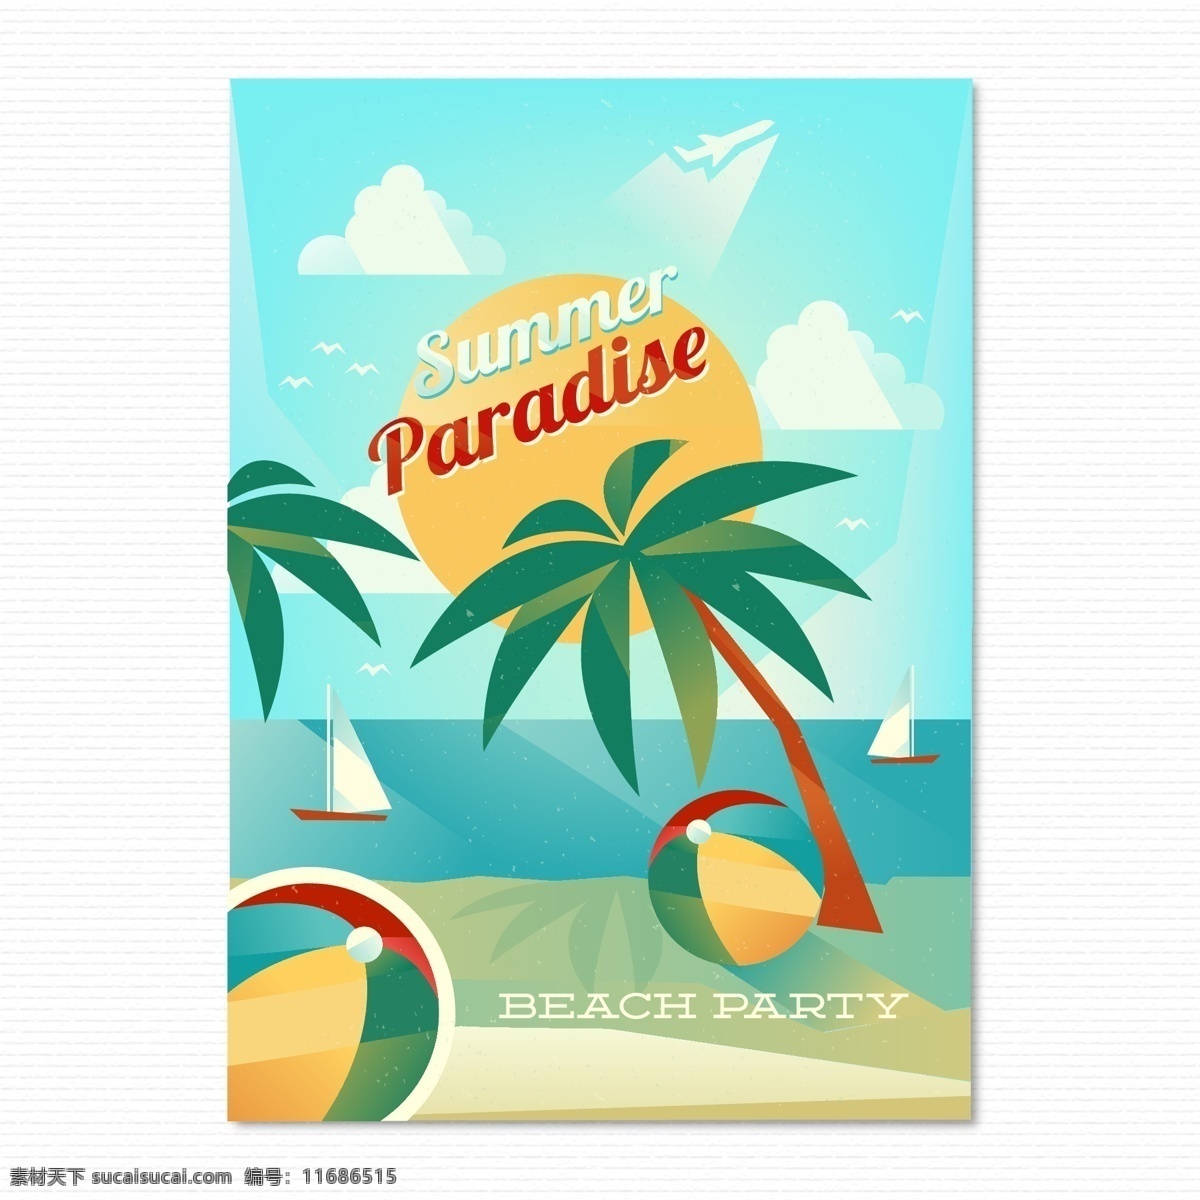 夏天的海报 夏天背景素材 广告设计模板 ai素材 海边素材 椰树 海滩 阳光 大海 帆船 皮球 夏天